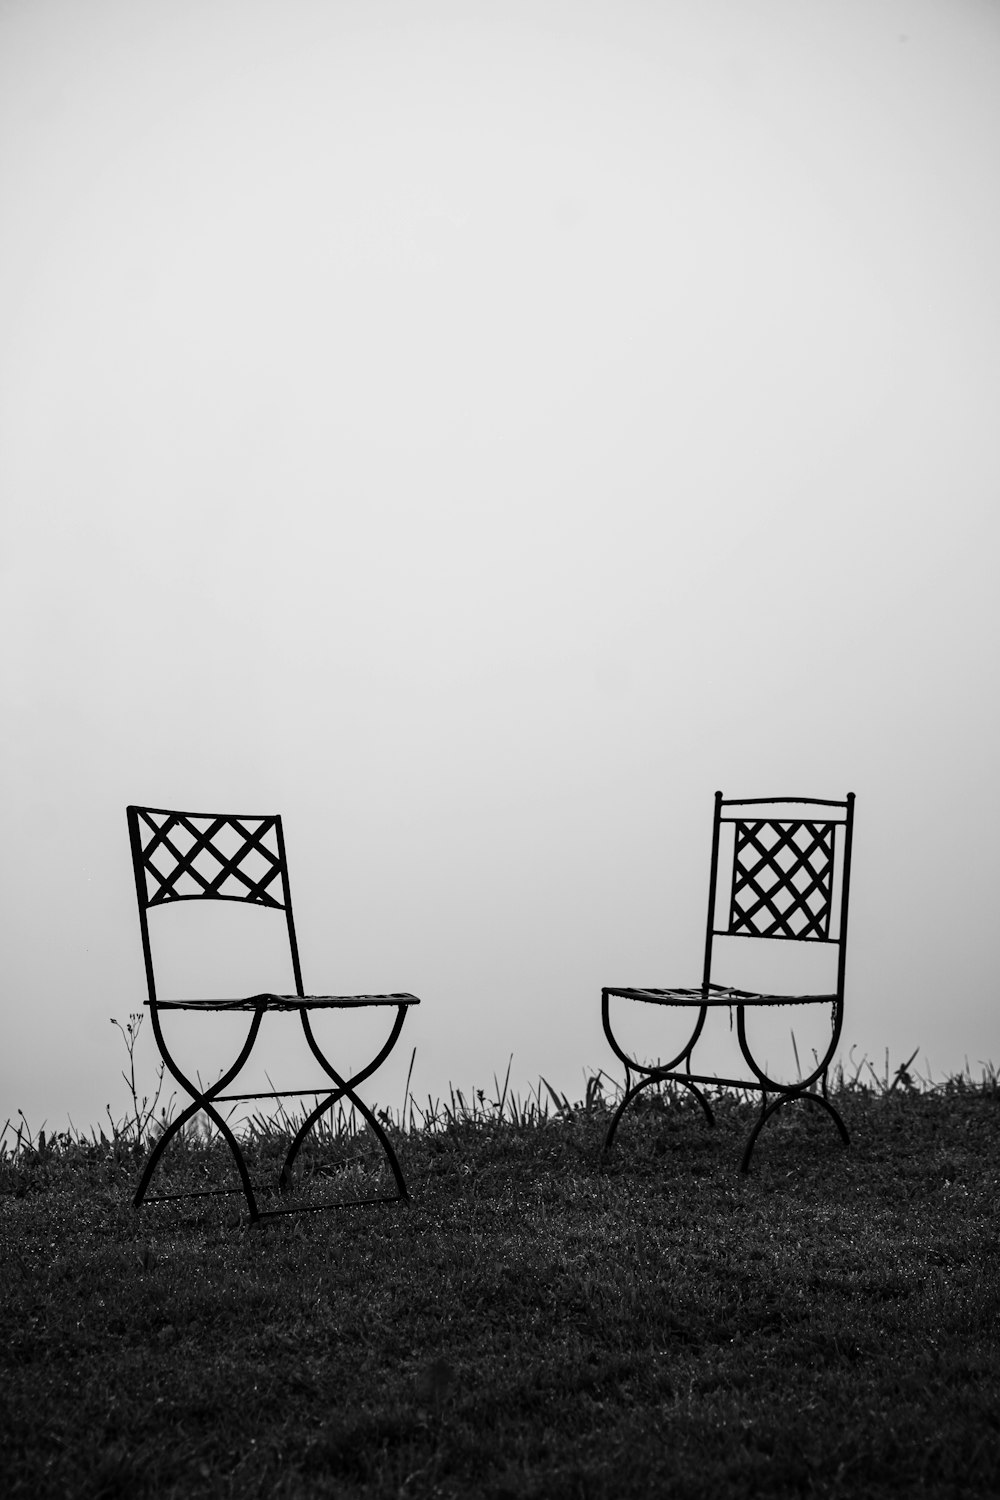 緑の芝生のフィールドに黒と白の折りたたみ椅子